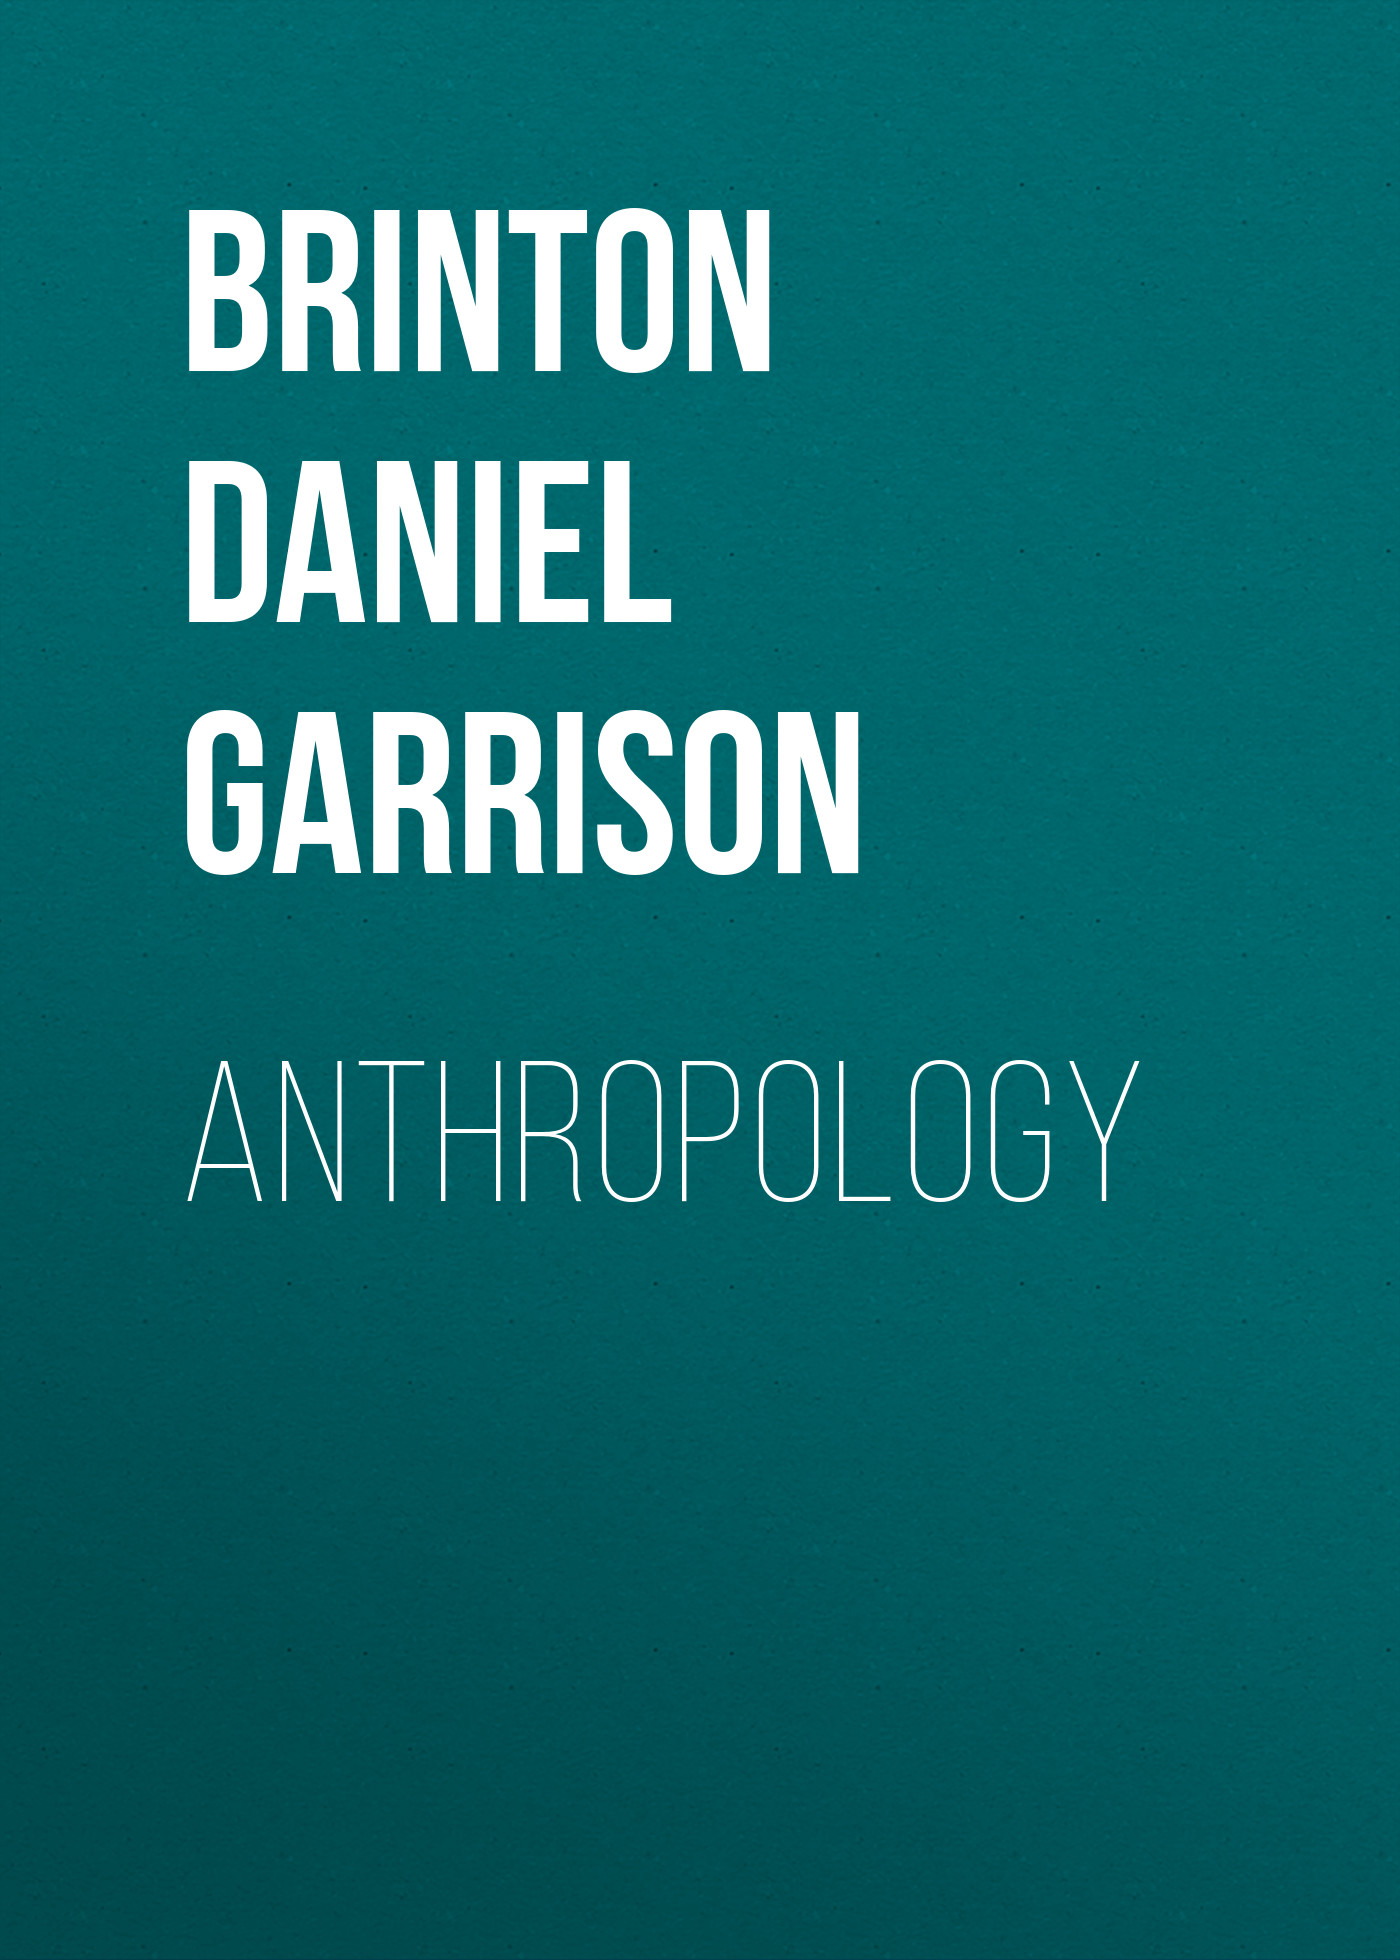 Книга Anthropology из серии , созданная Daniel Brinton, может относится к жанру Зарубежная старинная литература, Зарубежная классика. Стоимость электронной книги Anthropology с идентификатором 24174644 составляет 0.90 руб.